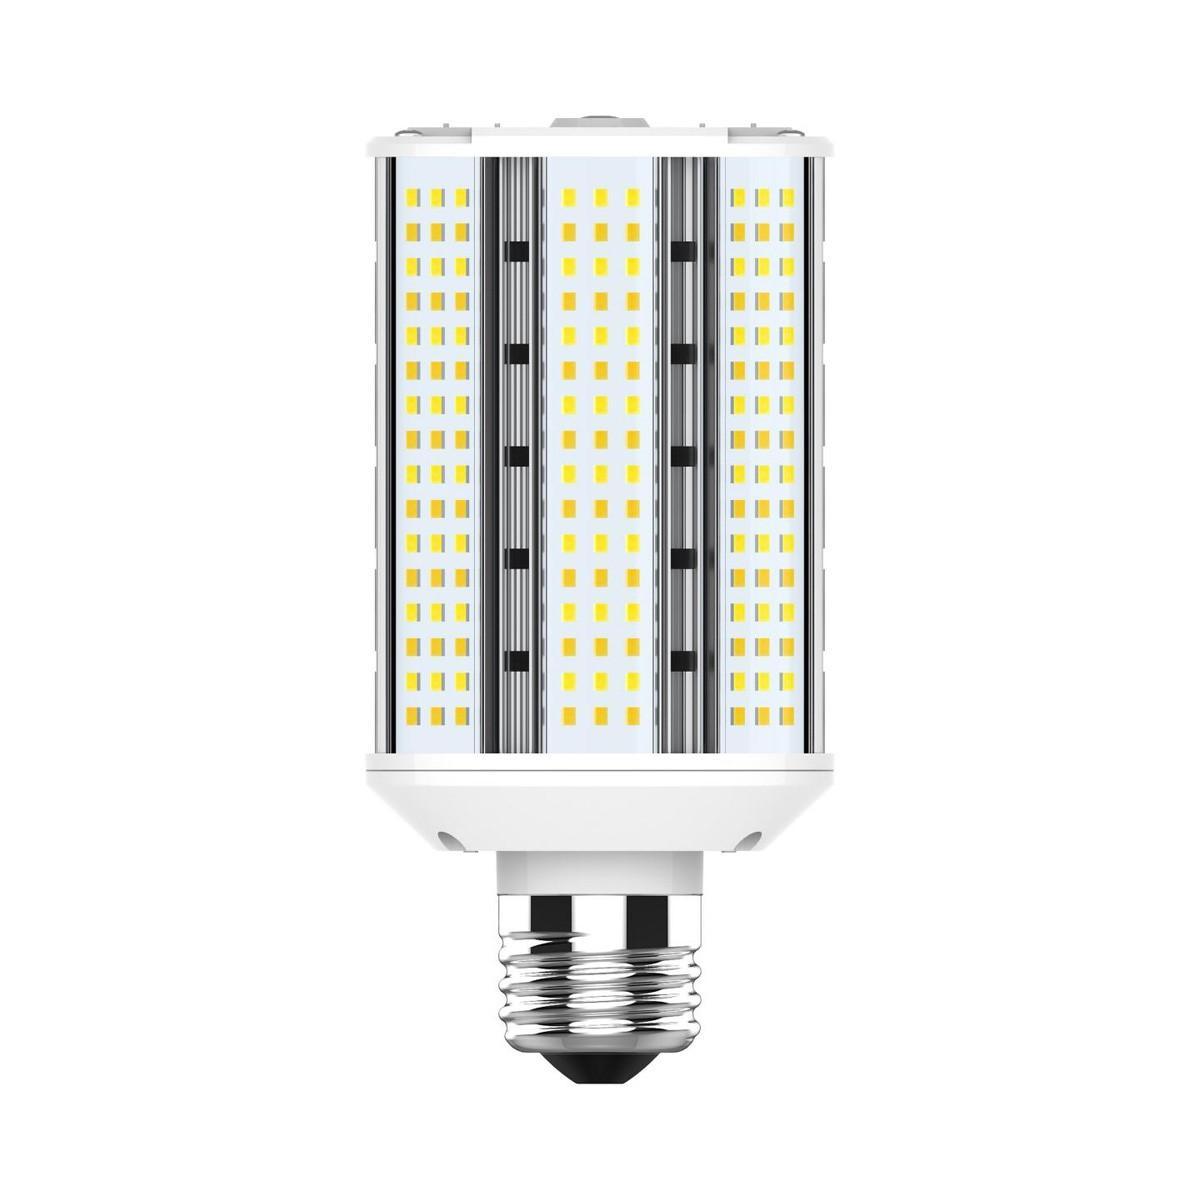 Hi-Pro Wall Pack/Shoebox LED Retrofit Lamp, 30W, 4500 Lumens, Selectable CCT, 30K/40K/50K, E26 Base, 120-277V